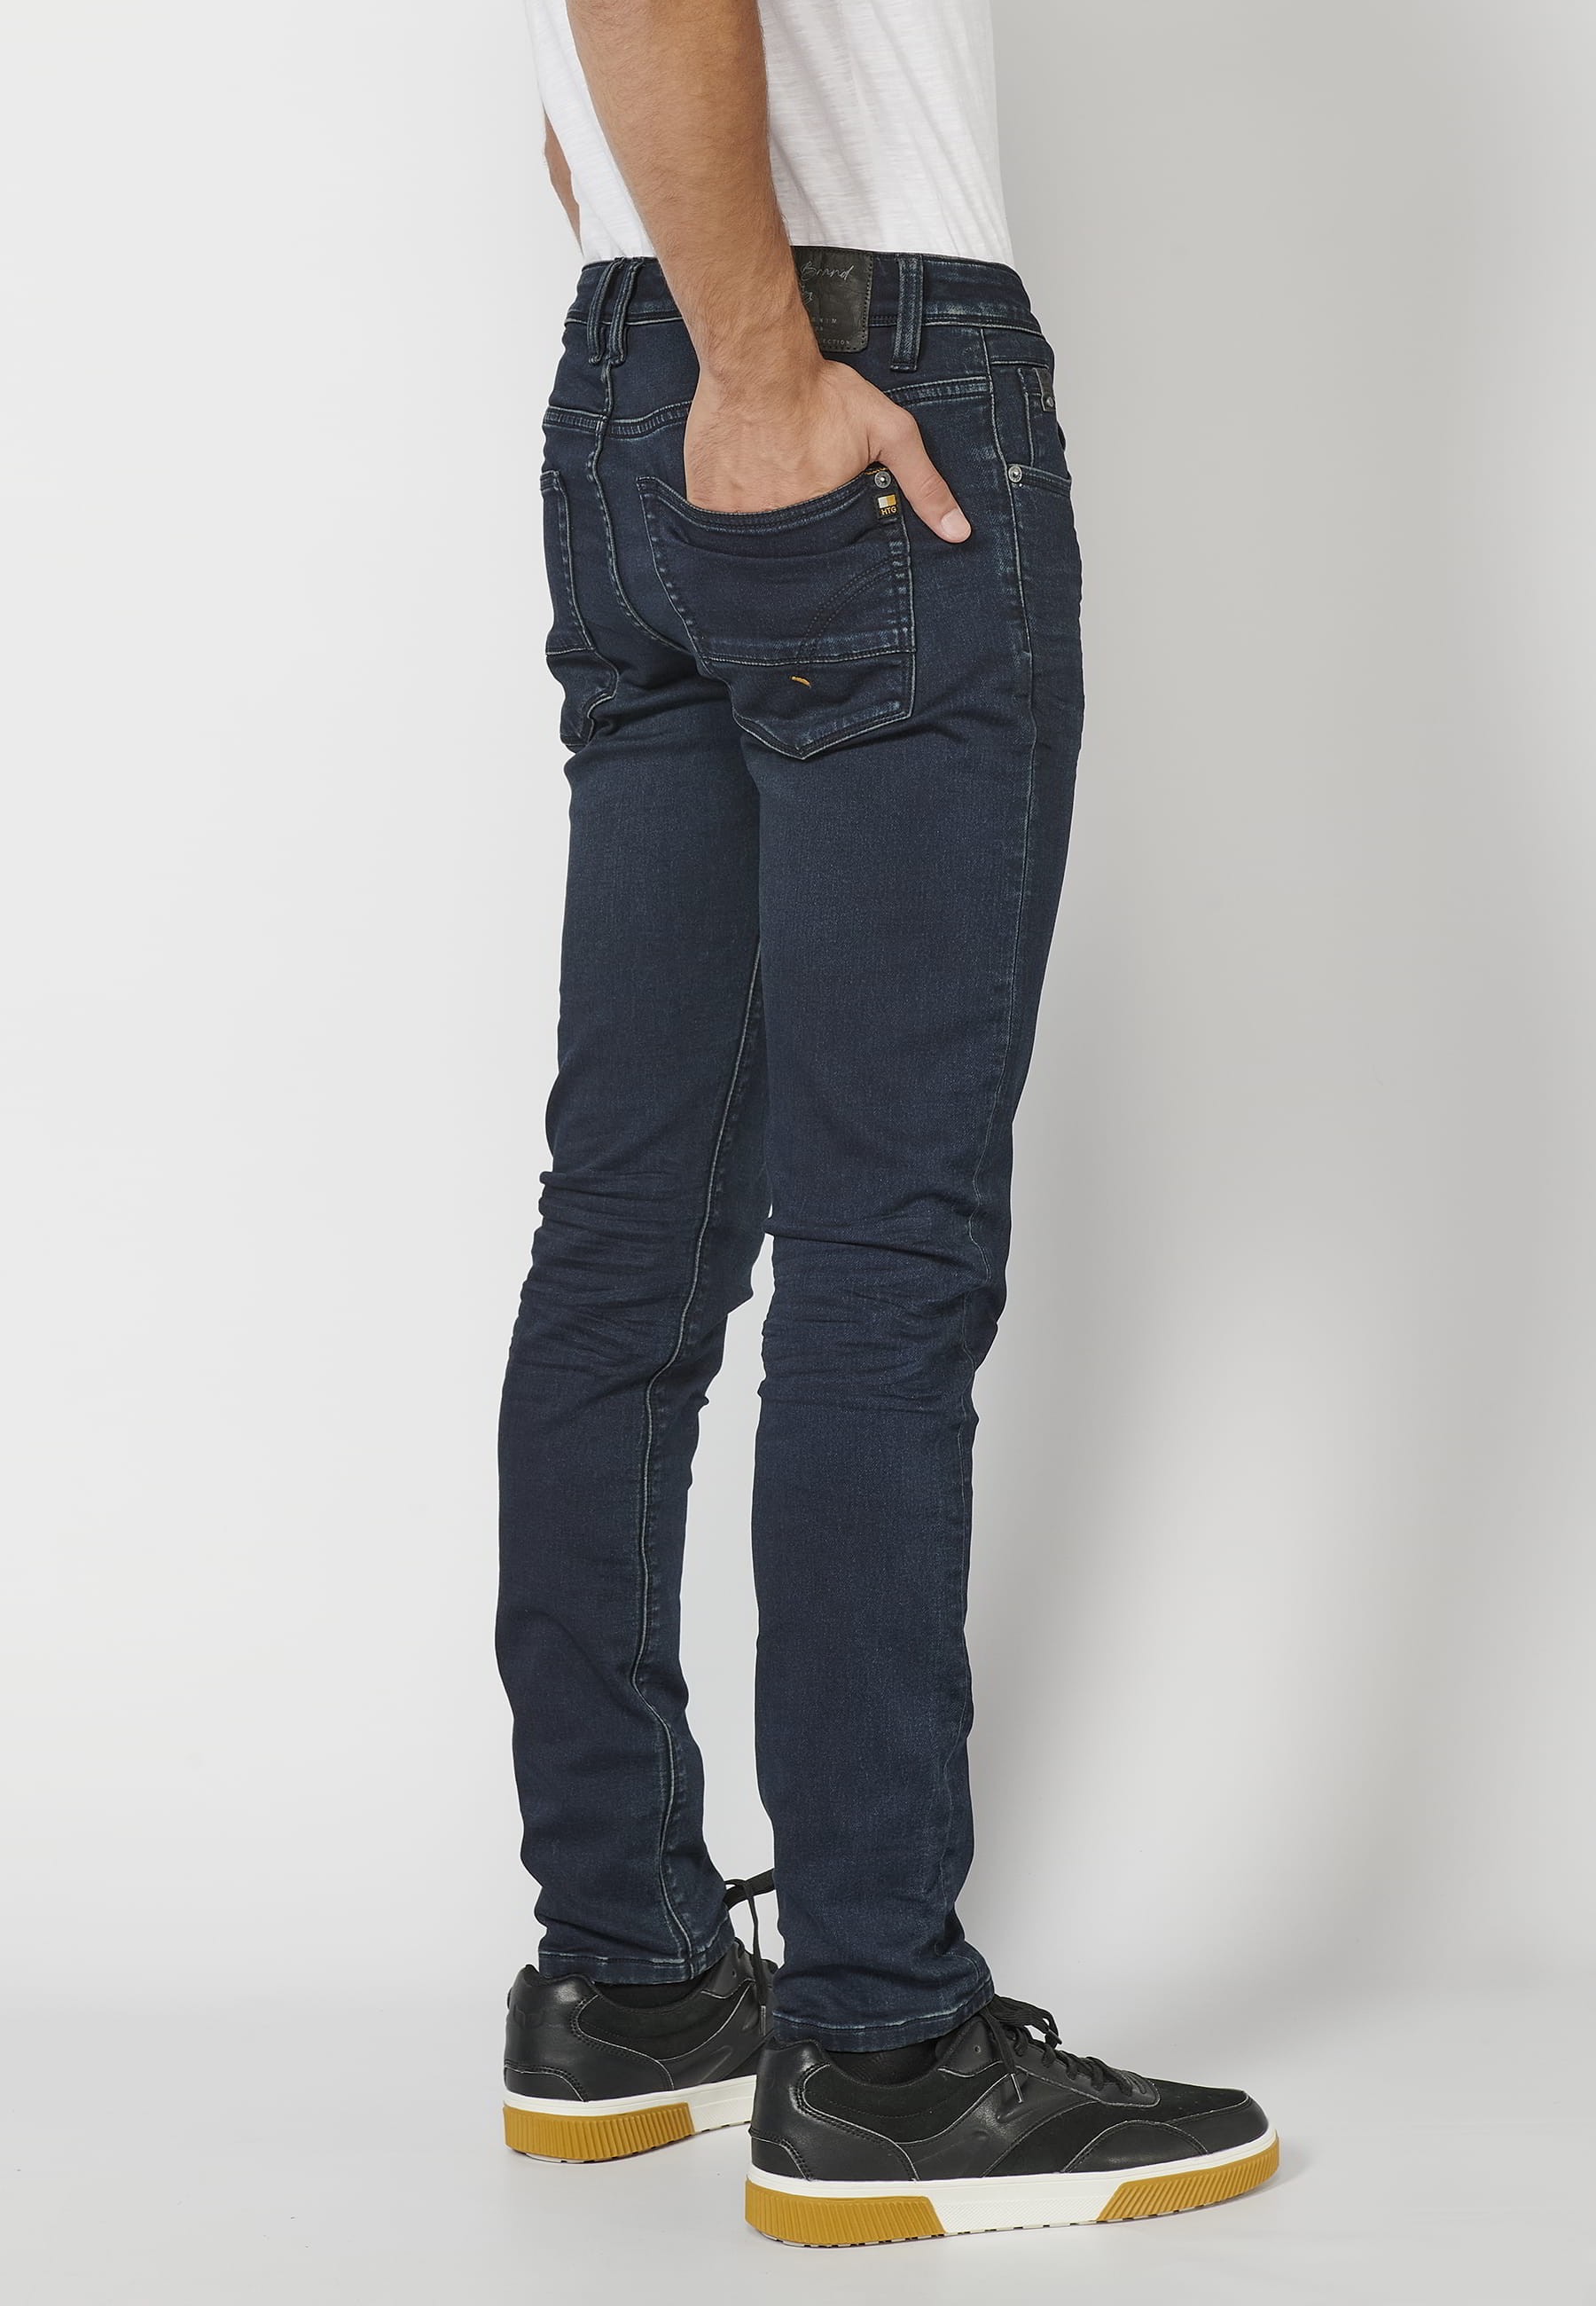 Pantalon Jean long coupe slim, couleur Bleu Foncé pour Homme 7